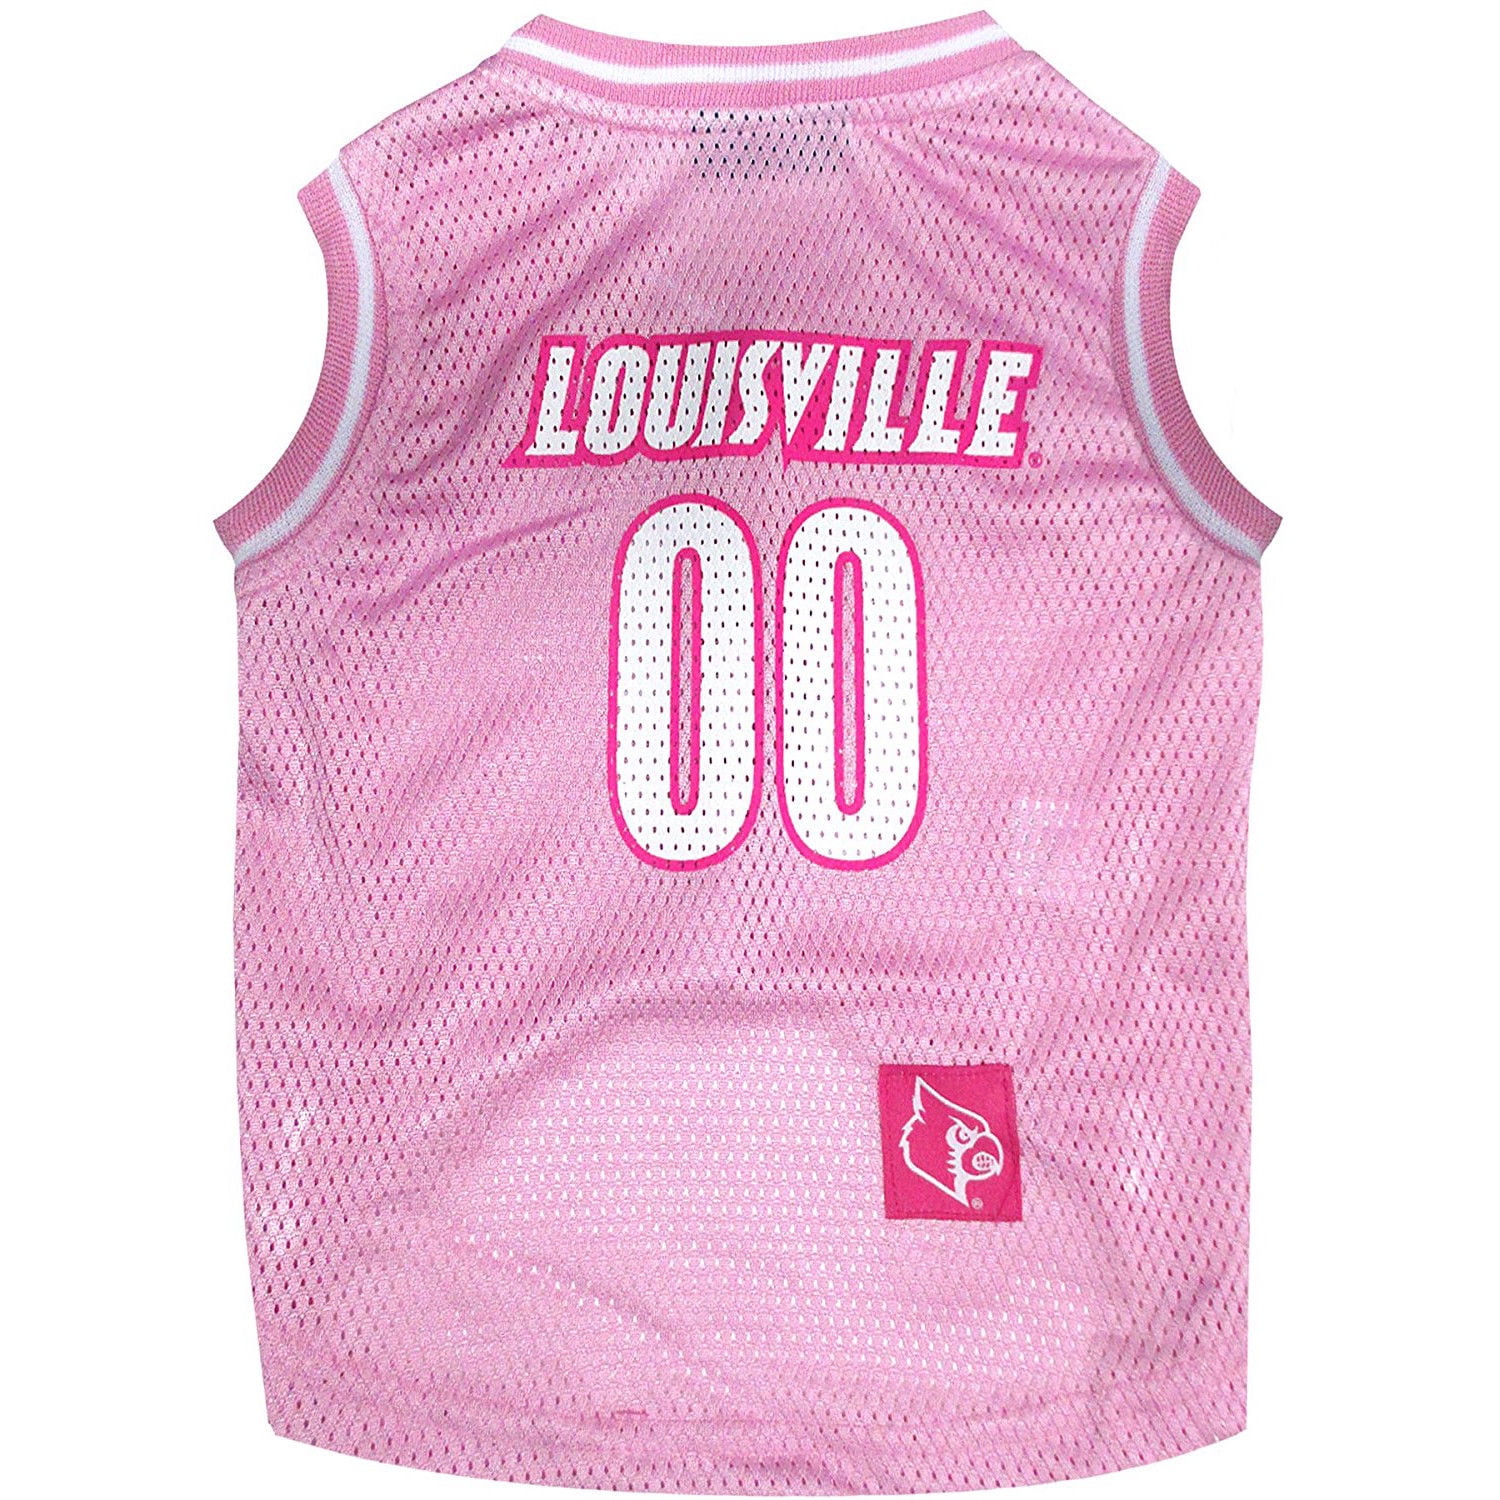 Pets First Louisville Cardinals Pink Basketball Jersey, Medium